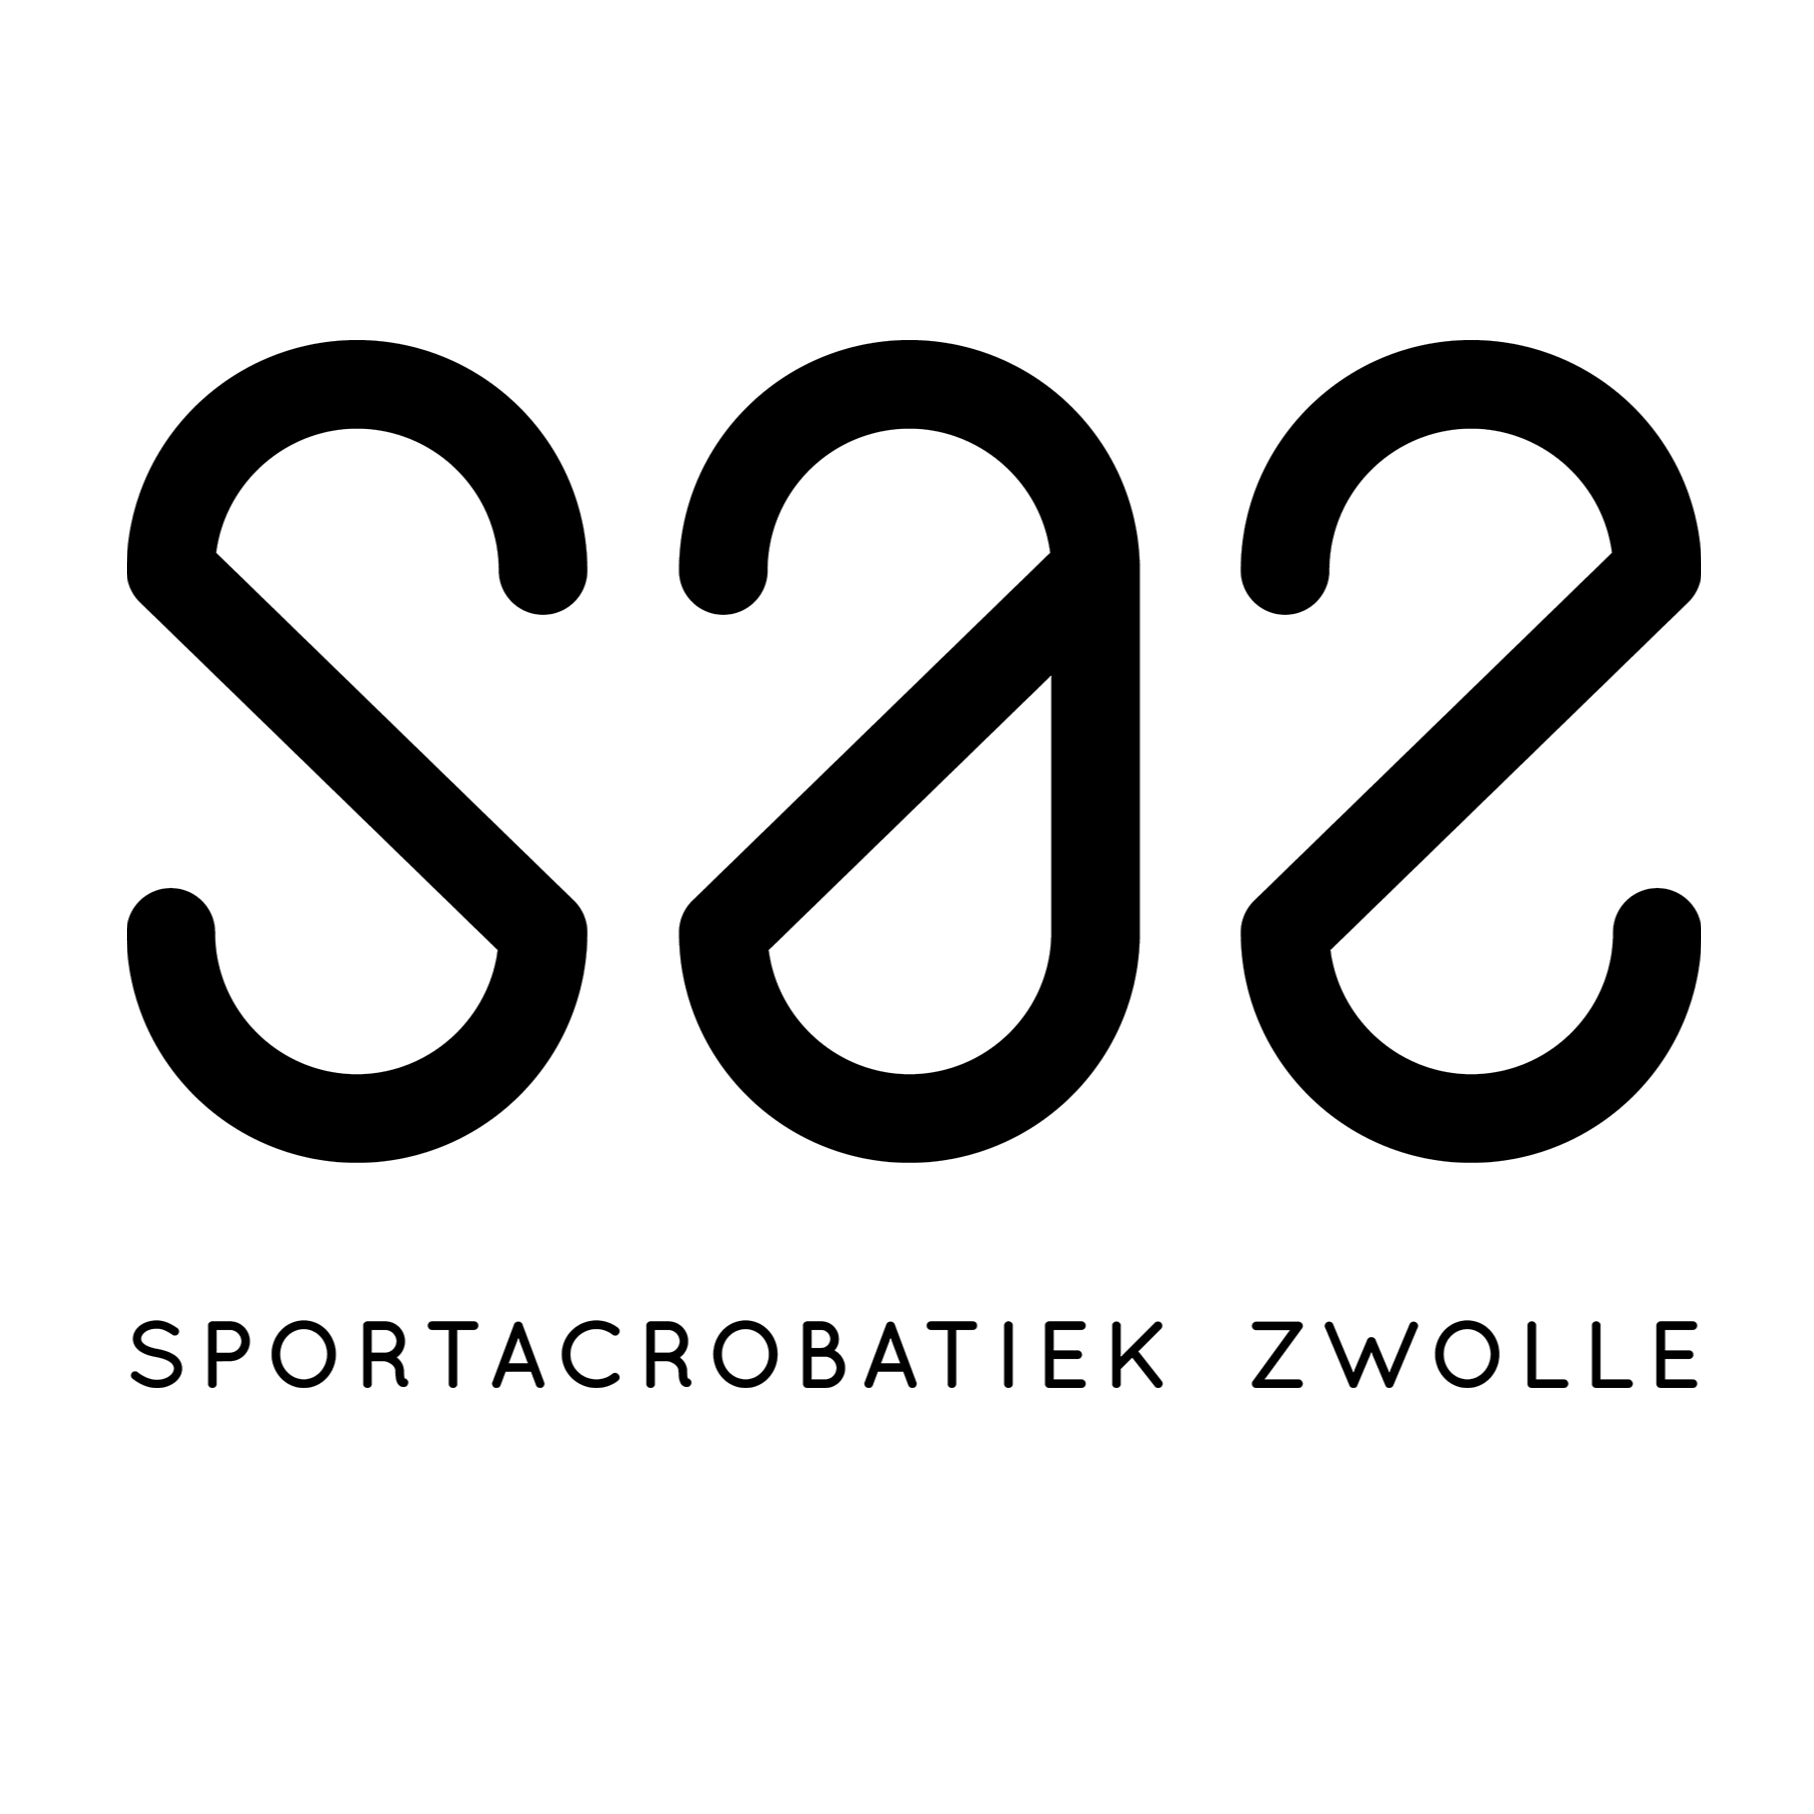 Sportacrobatiek Zwolle